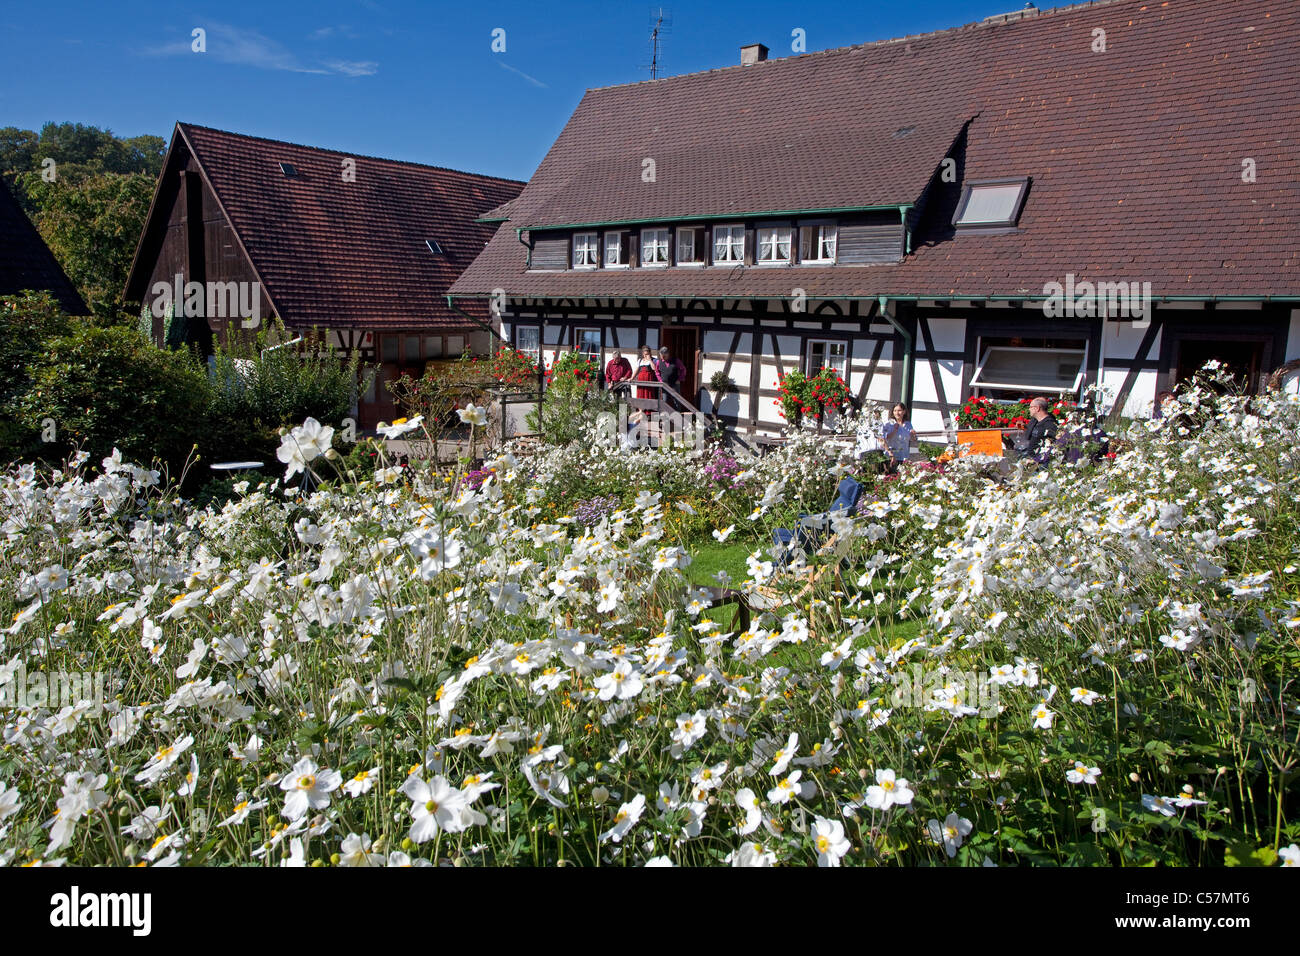 Bauernhaus und Bauerngarten en Sasbachwalden, Herbstanemonen, Anemone altaica,paredes entramadas y jardín de flores, Windflower Foto de stock